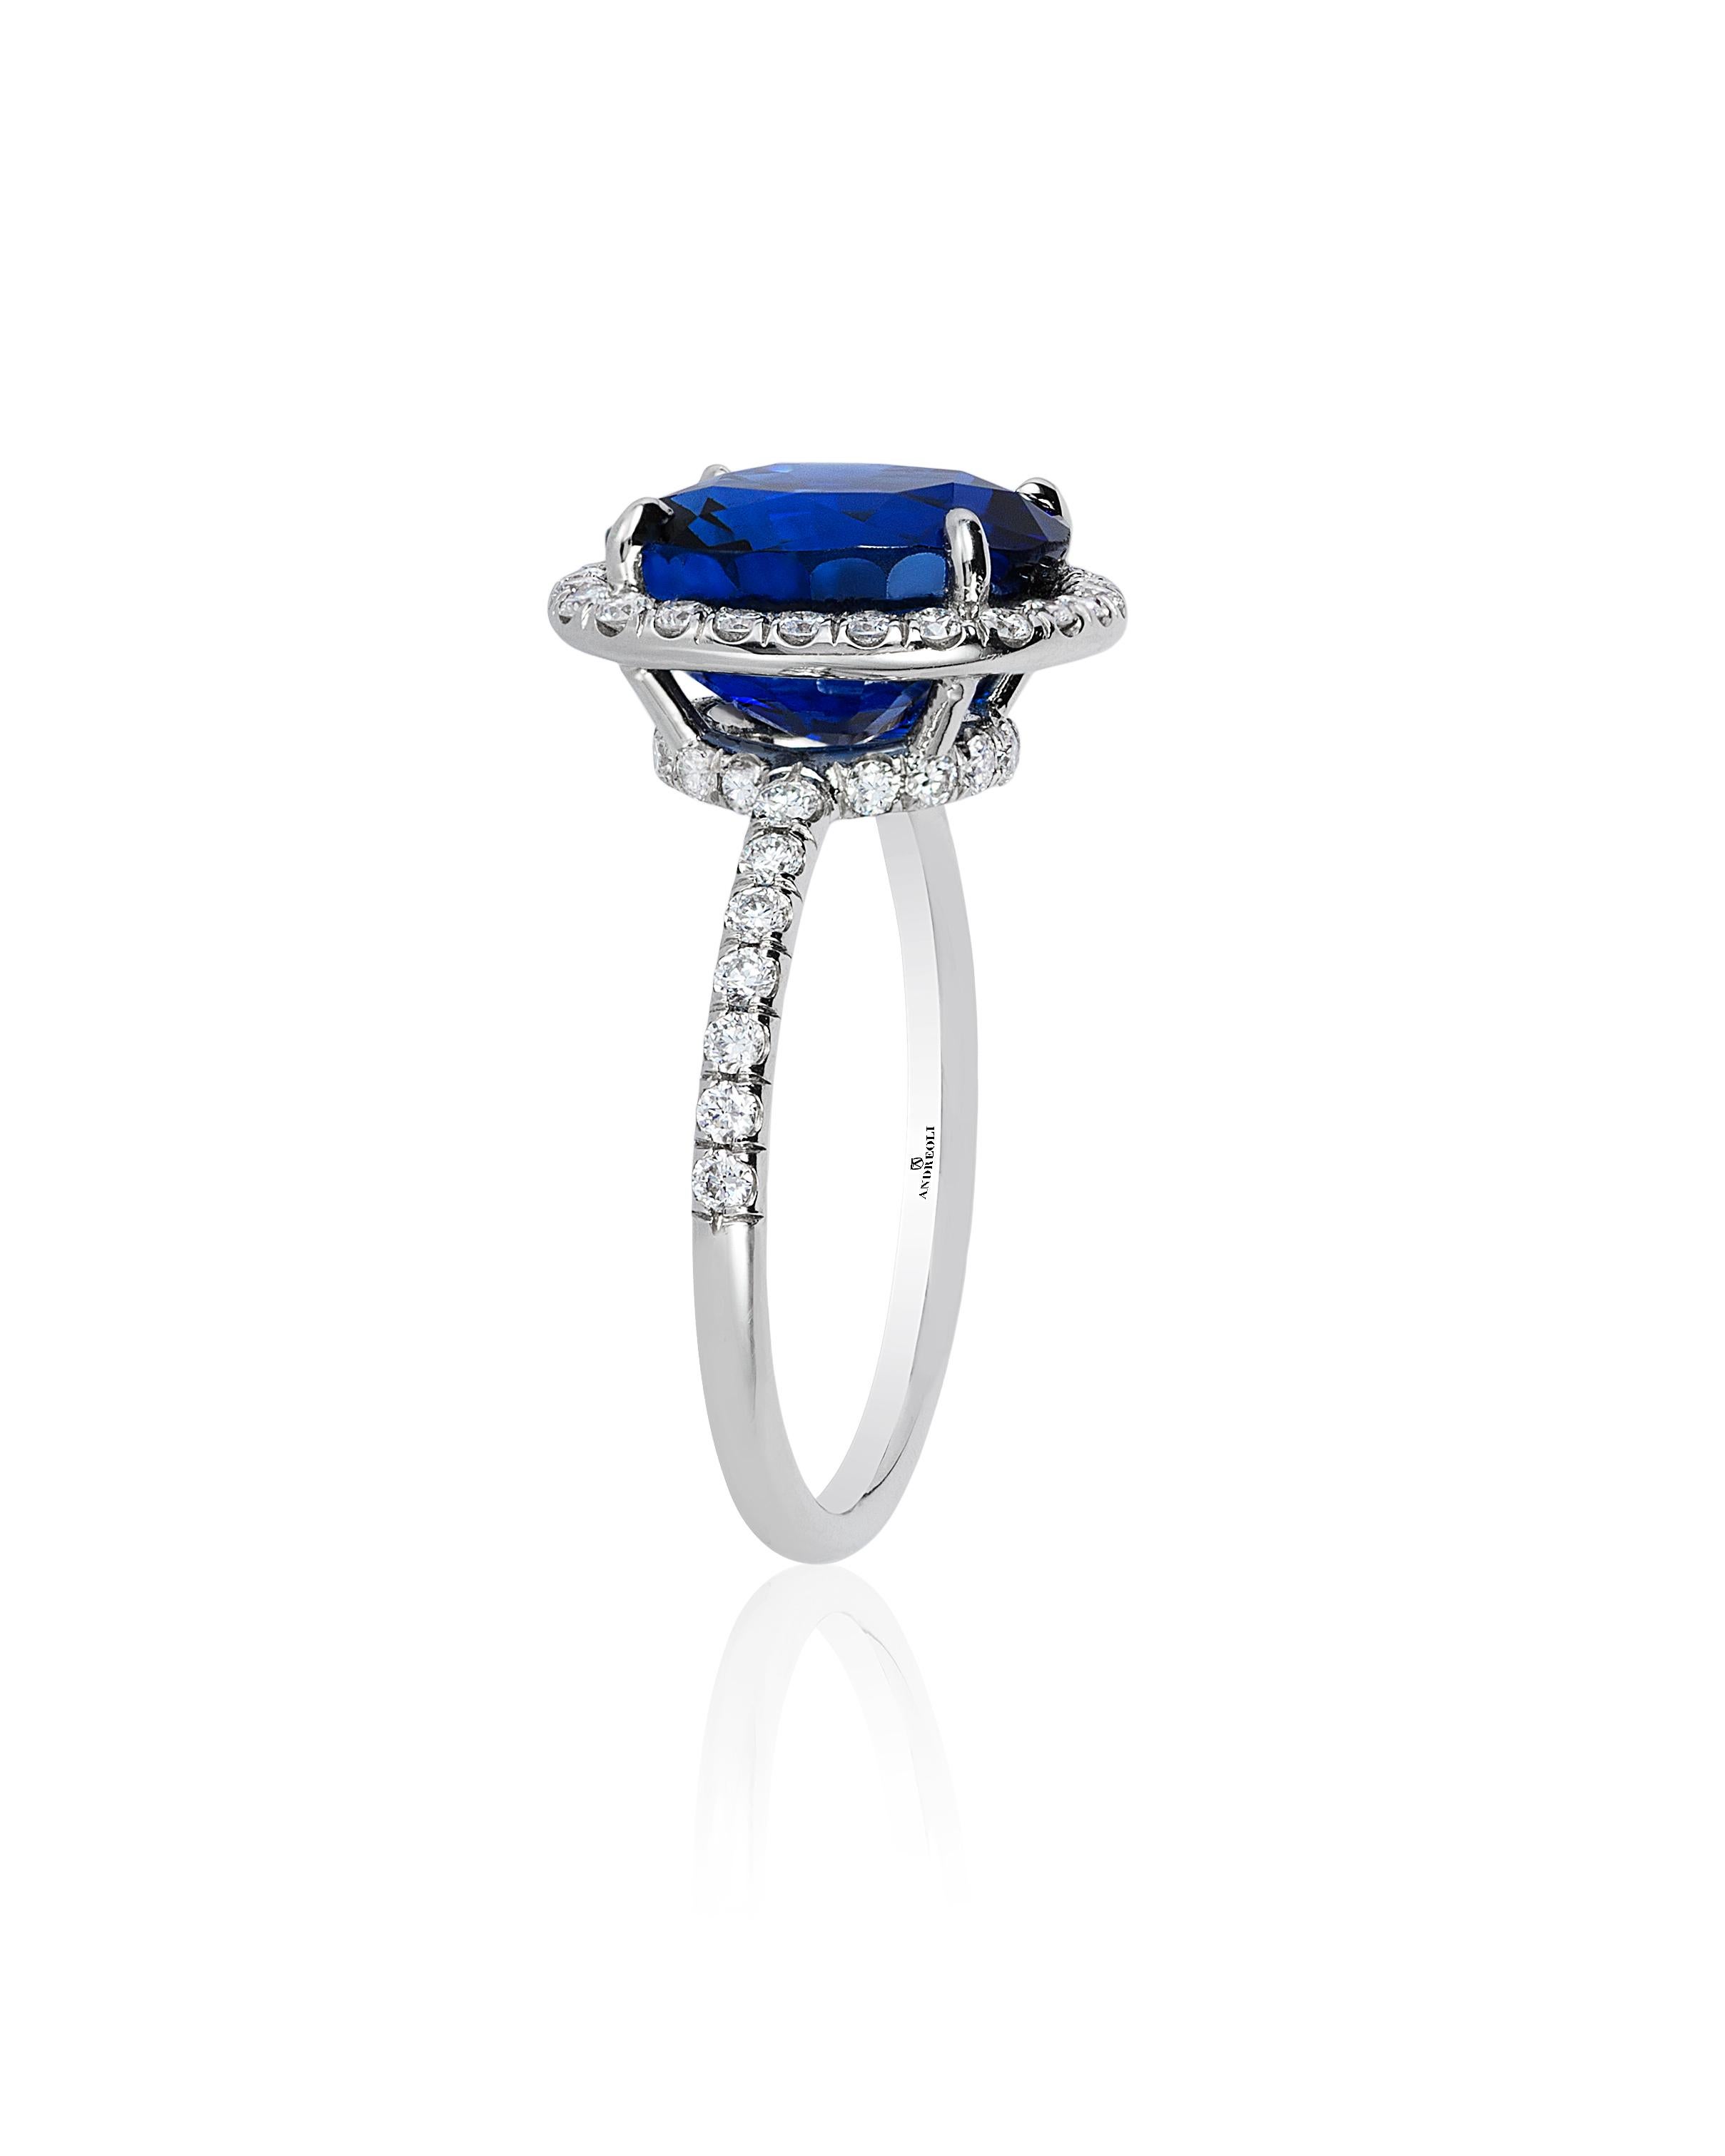 Andreoli CDC Certified 6.31 Carat Ceylon Blue Sapphire Diamond Platinum Ring. Cette bague présente un saphir bleu de Ceylan coussin de 6,31 carats certifié par C.Cilliante en Suisse, entouré de 0,56 carats de diamants ronds de taille brillant de